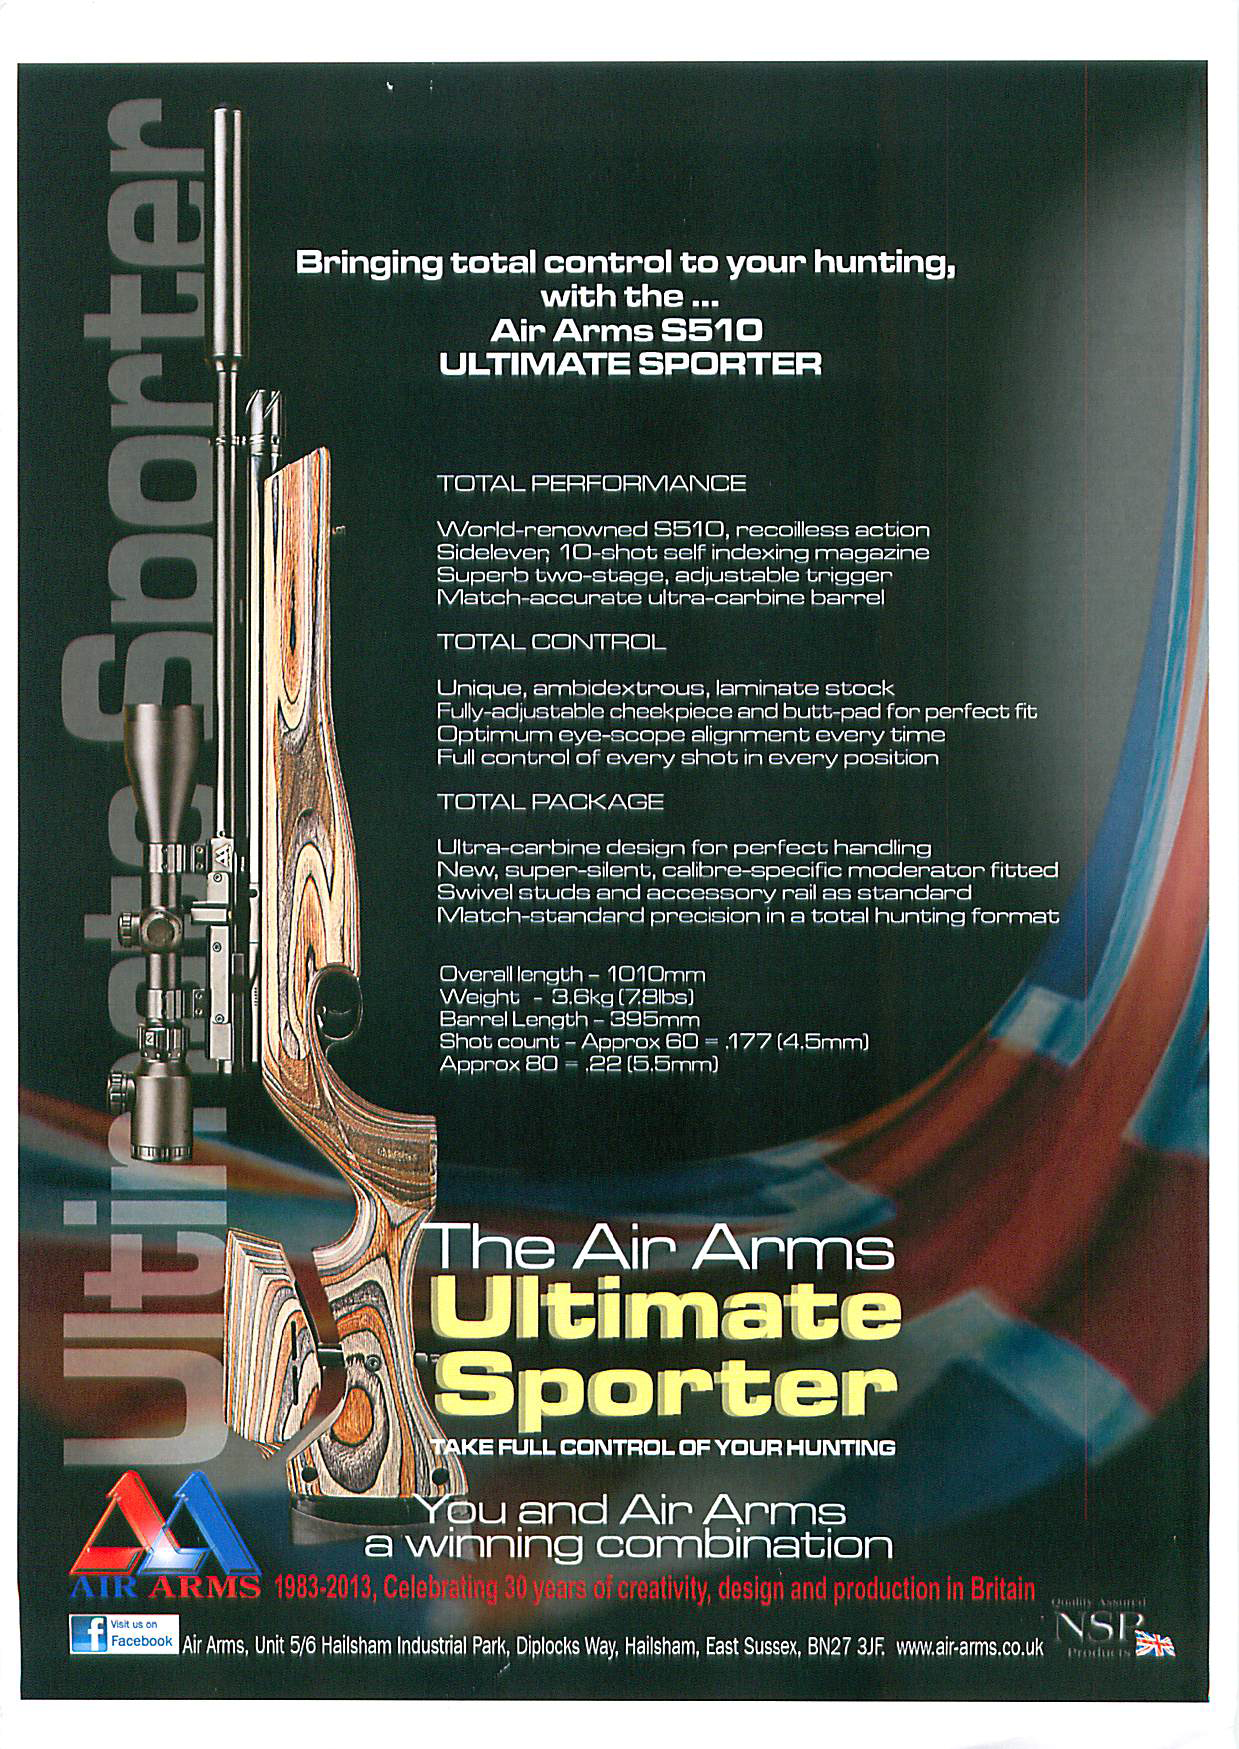 AA Ultimate Sporter